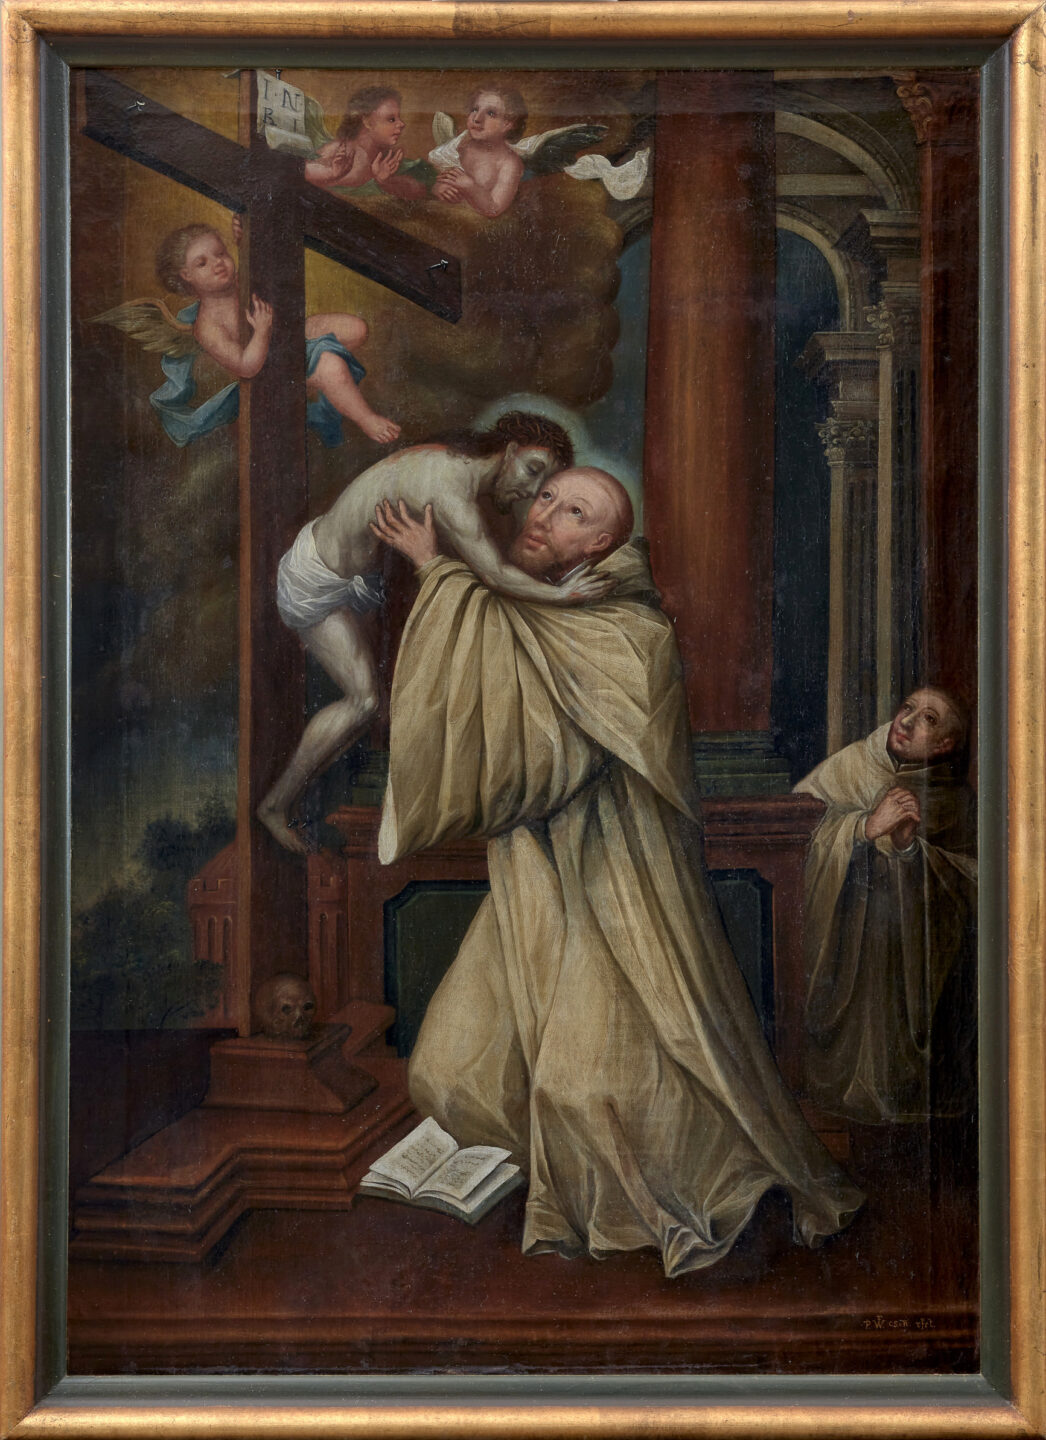 Der Heilige Bernhard empfängt Christus in seinen Armen, Unbekannt, 17. Jhd., Öl auf Leinwand